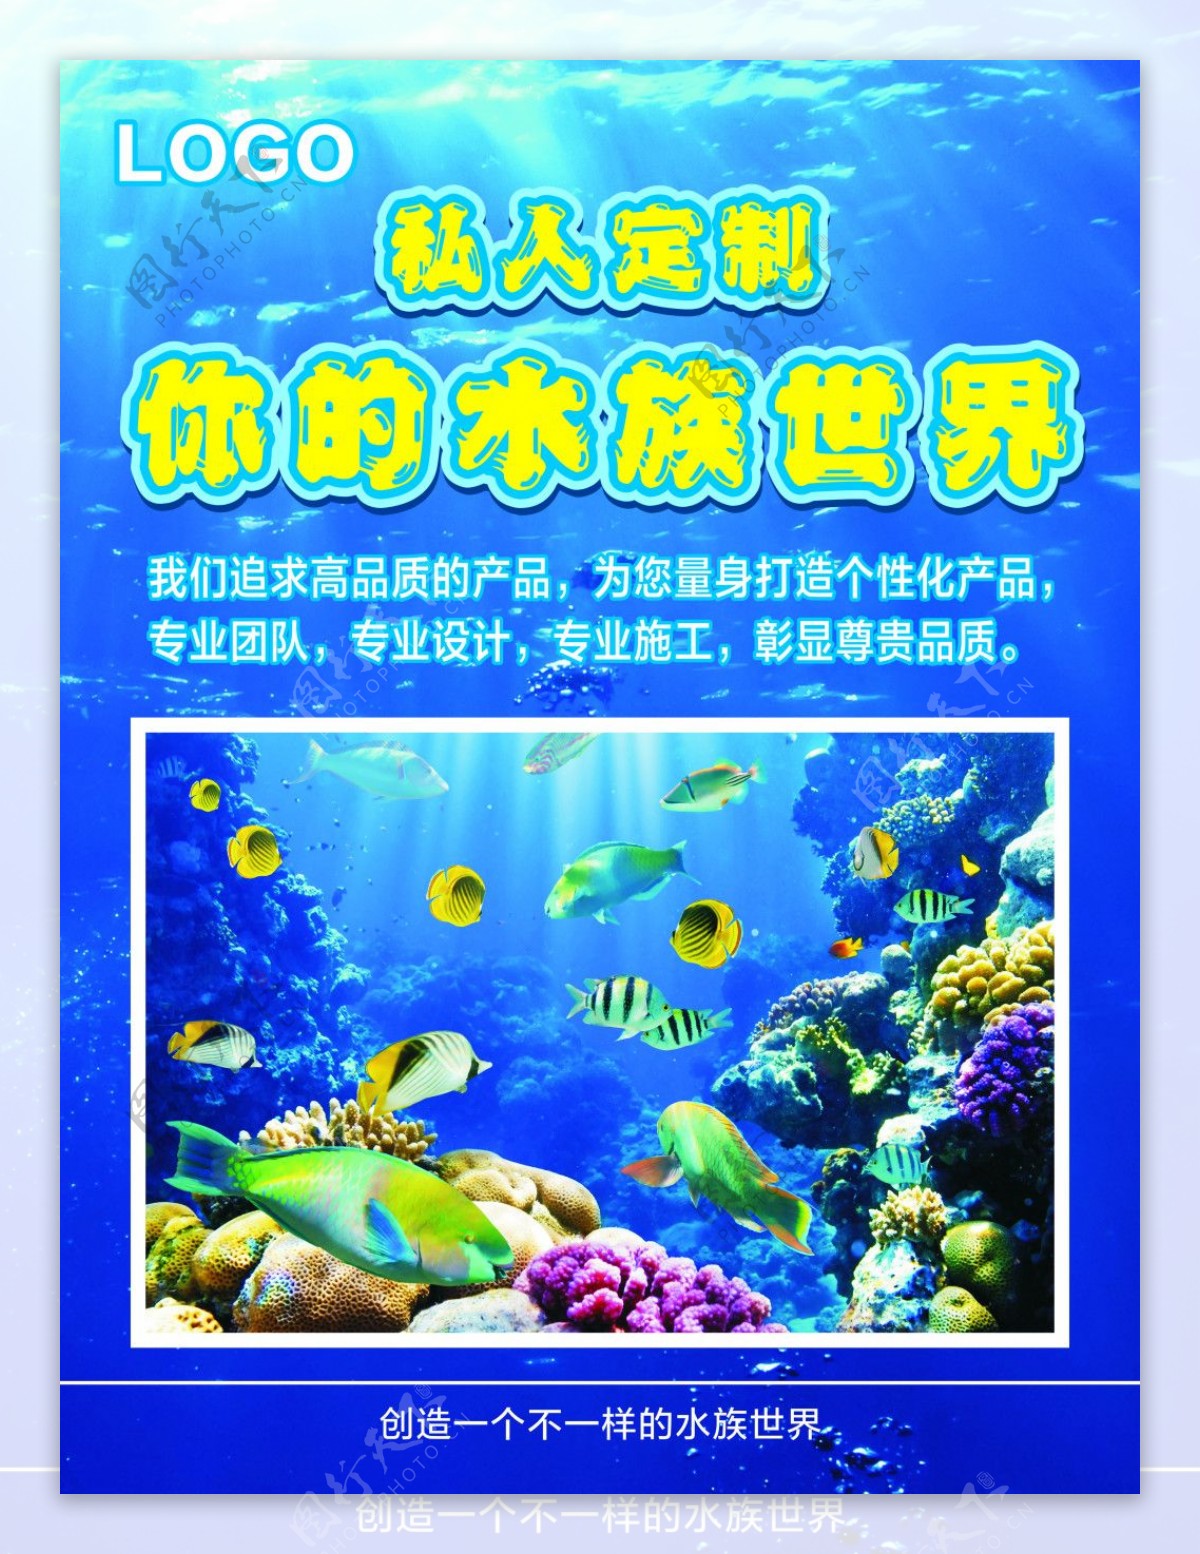 蓝色大海水族馆宣传海报CDR